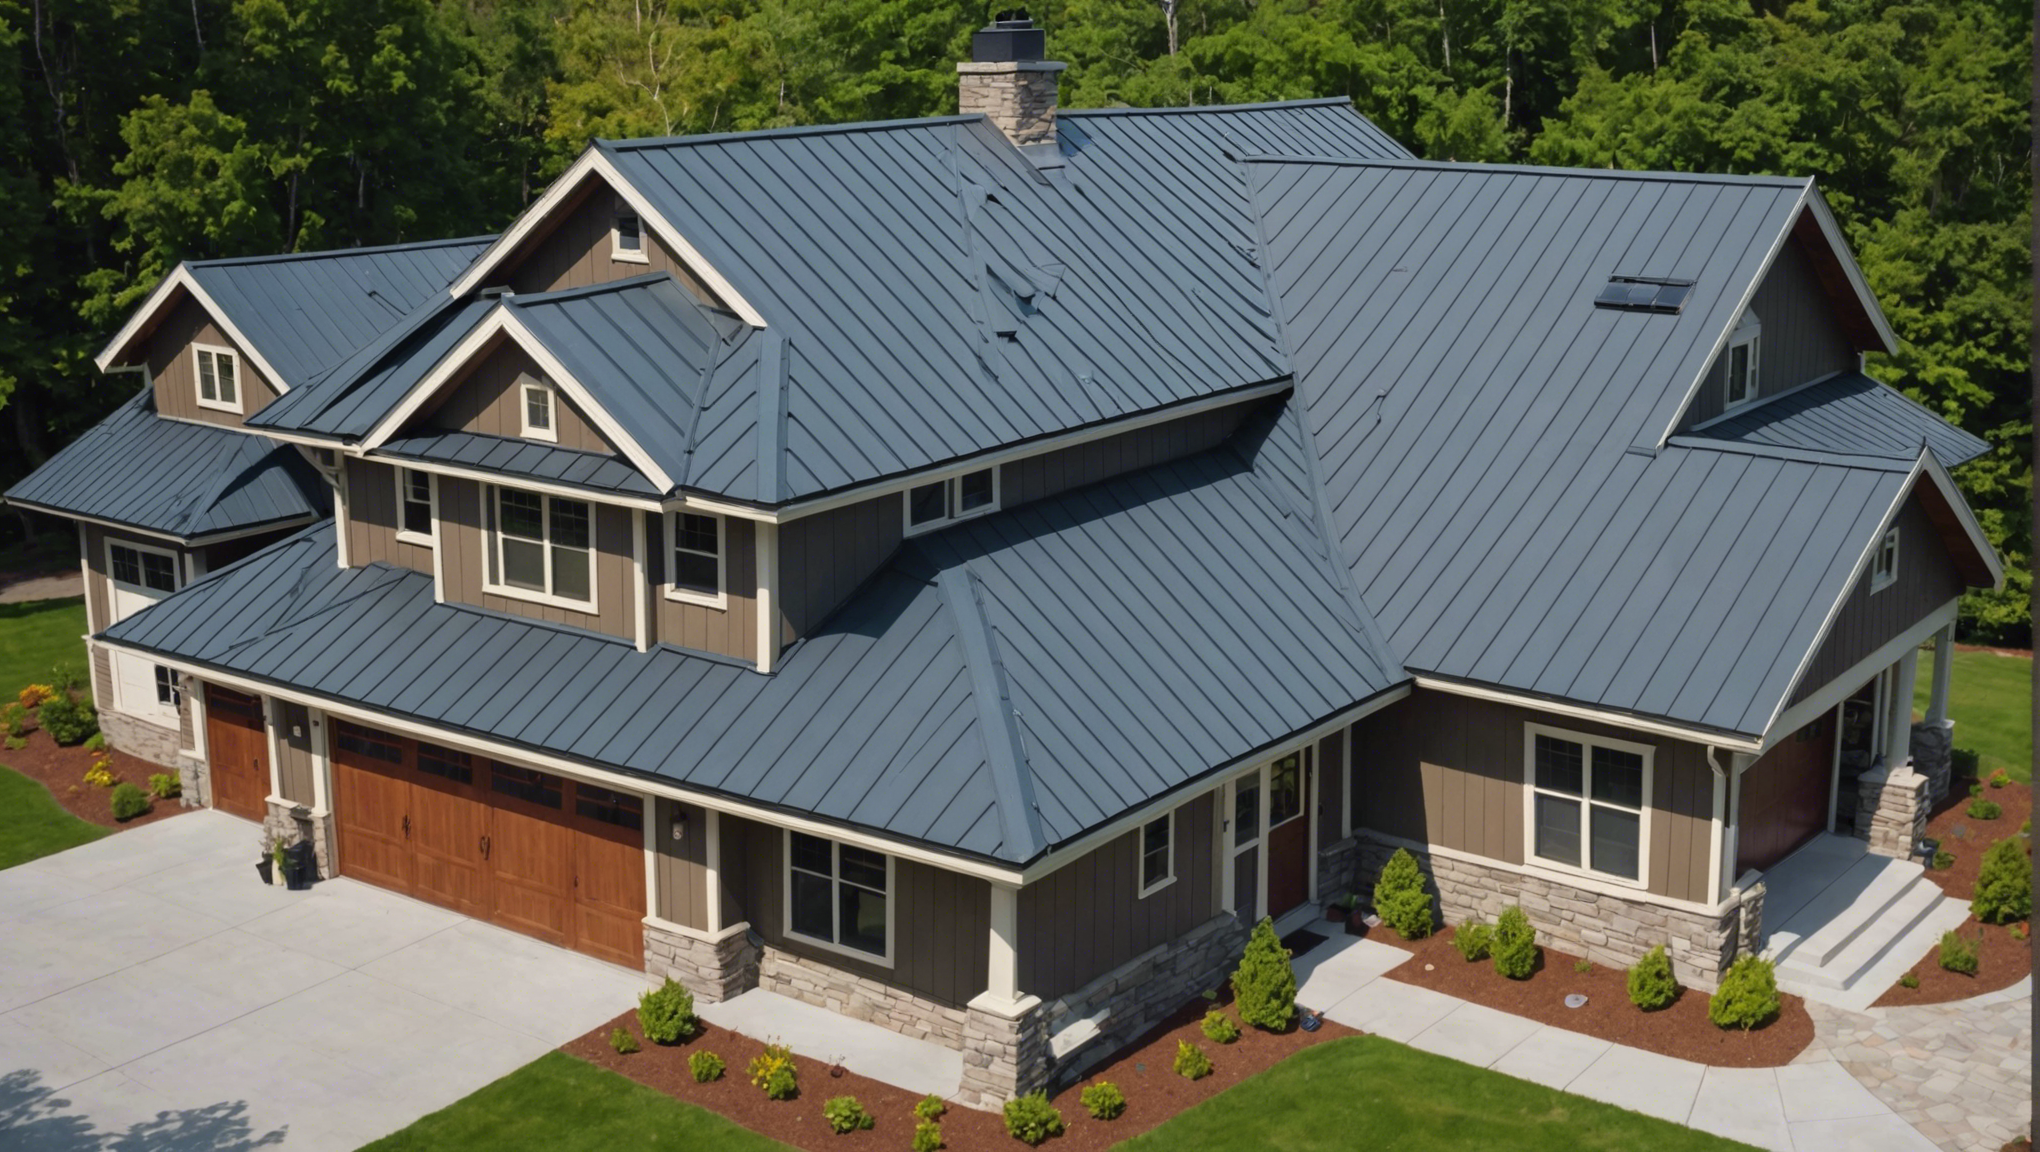 découvrez les avantages et inconvénients d'une toiture en bac acier pour prendre la meilleure décision pour votre projet de construction ou de rénovation.